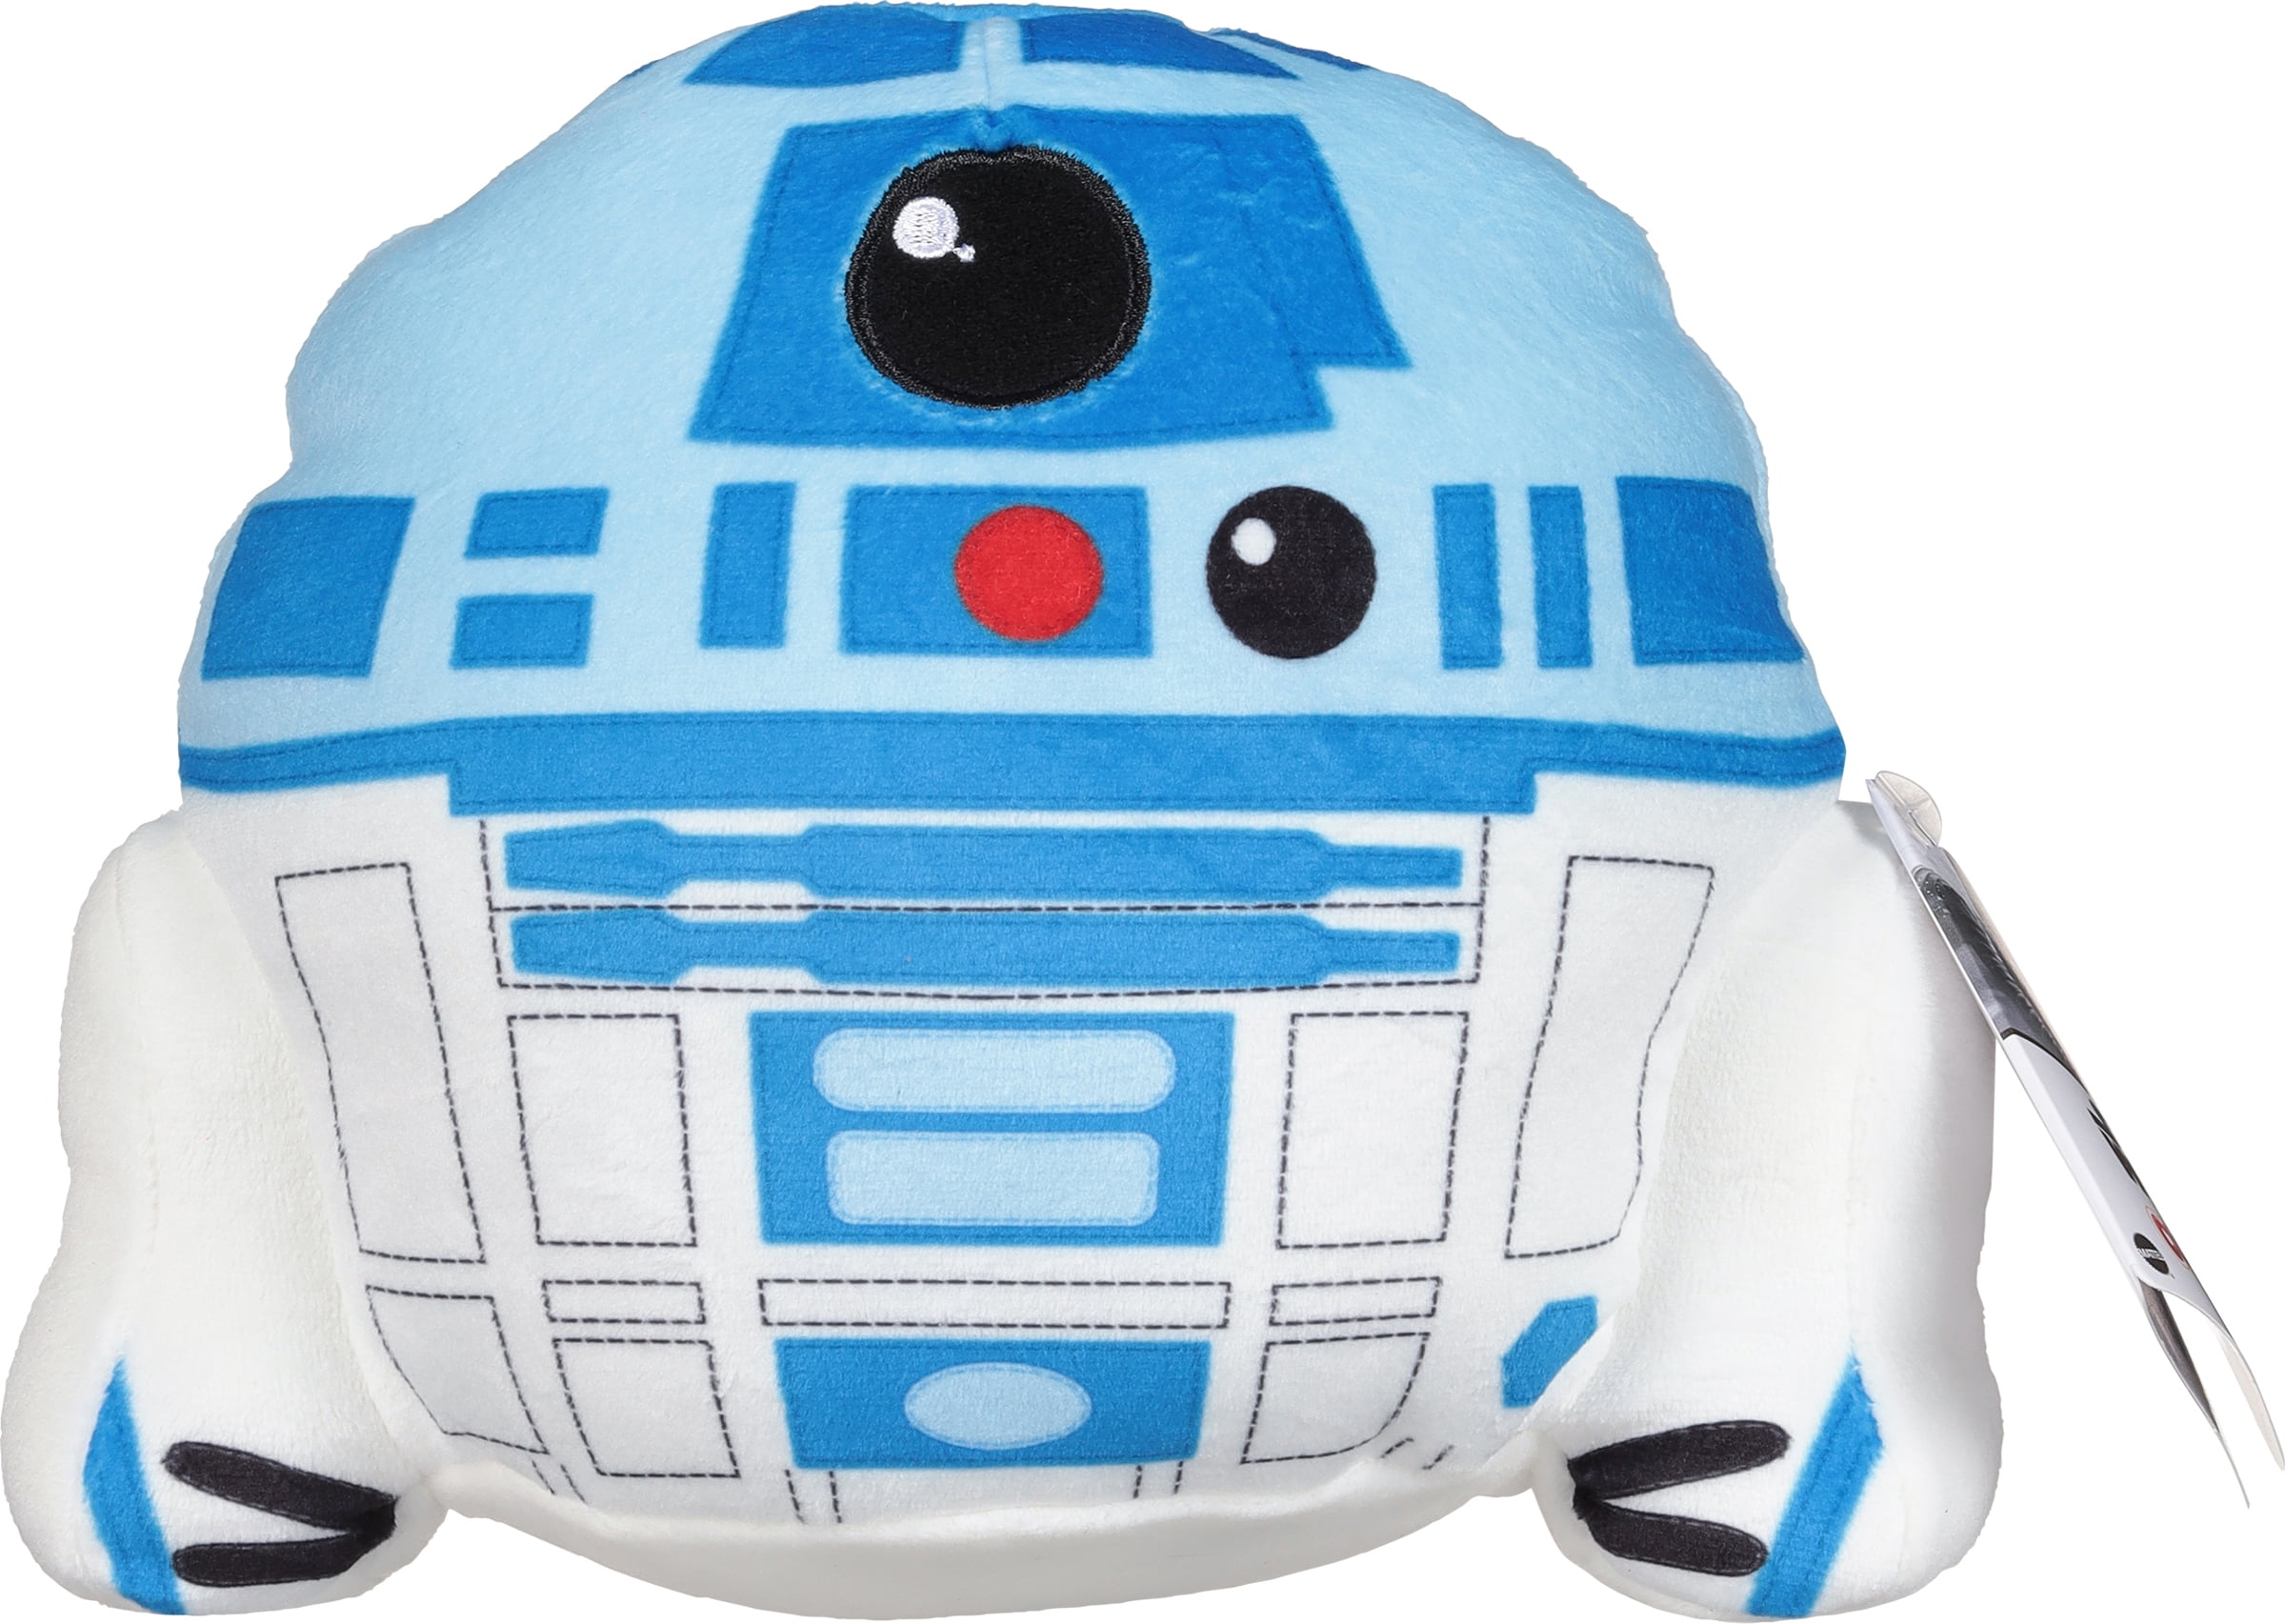 Bichinho virtual: R2-D2 de Star Wars é transformado em um